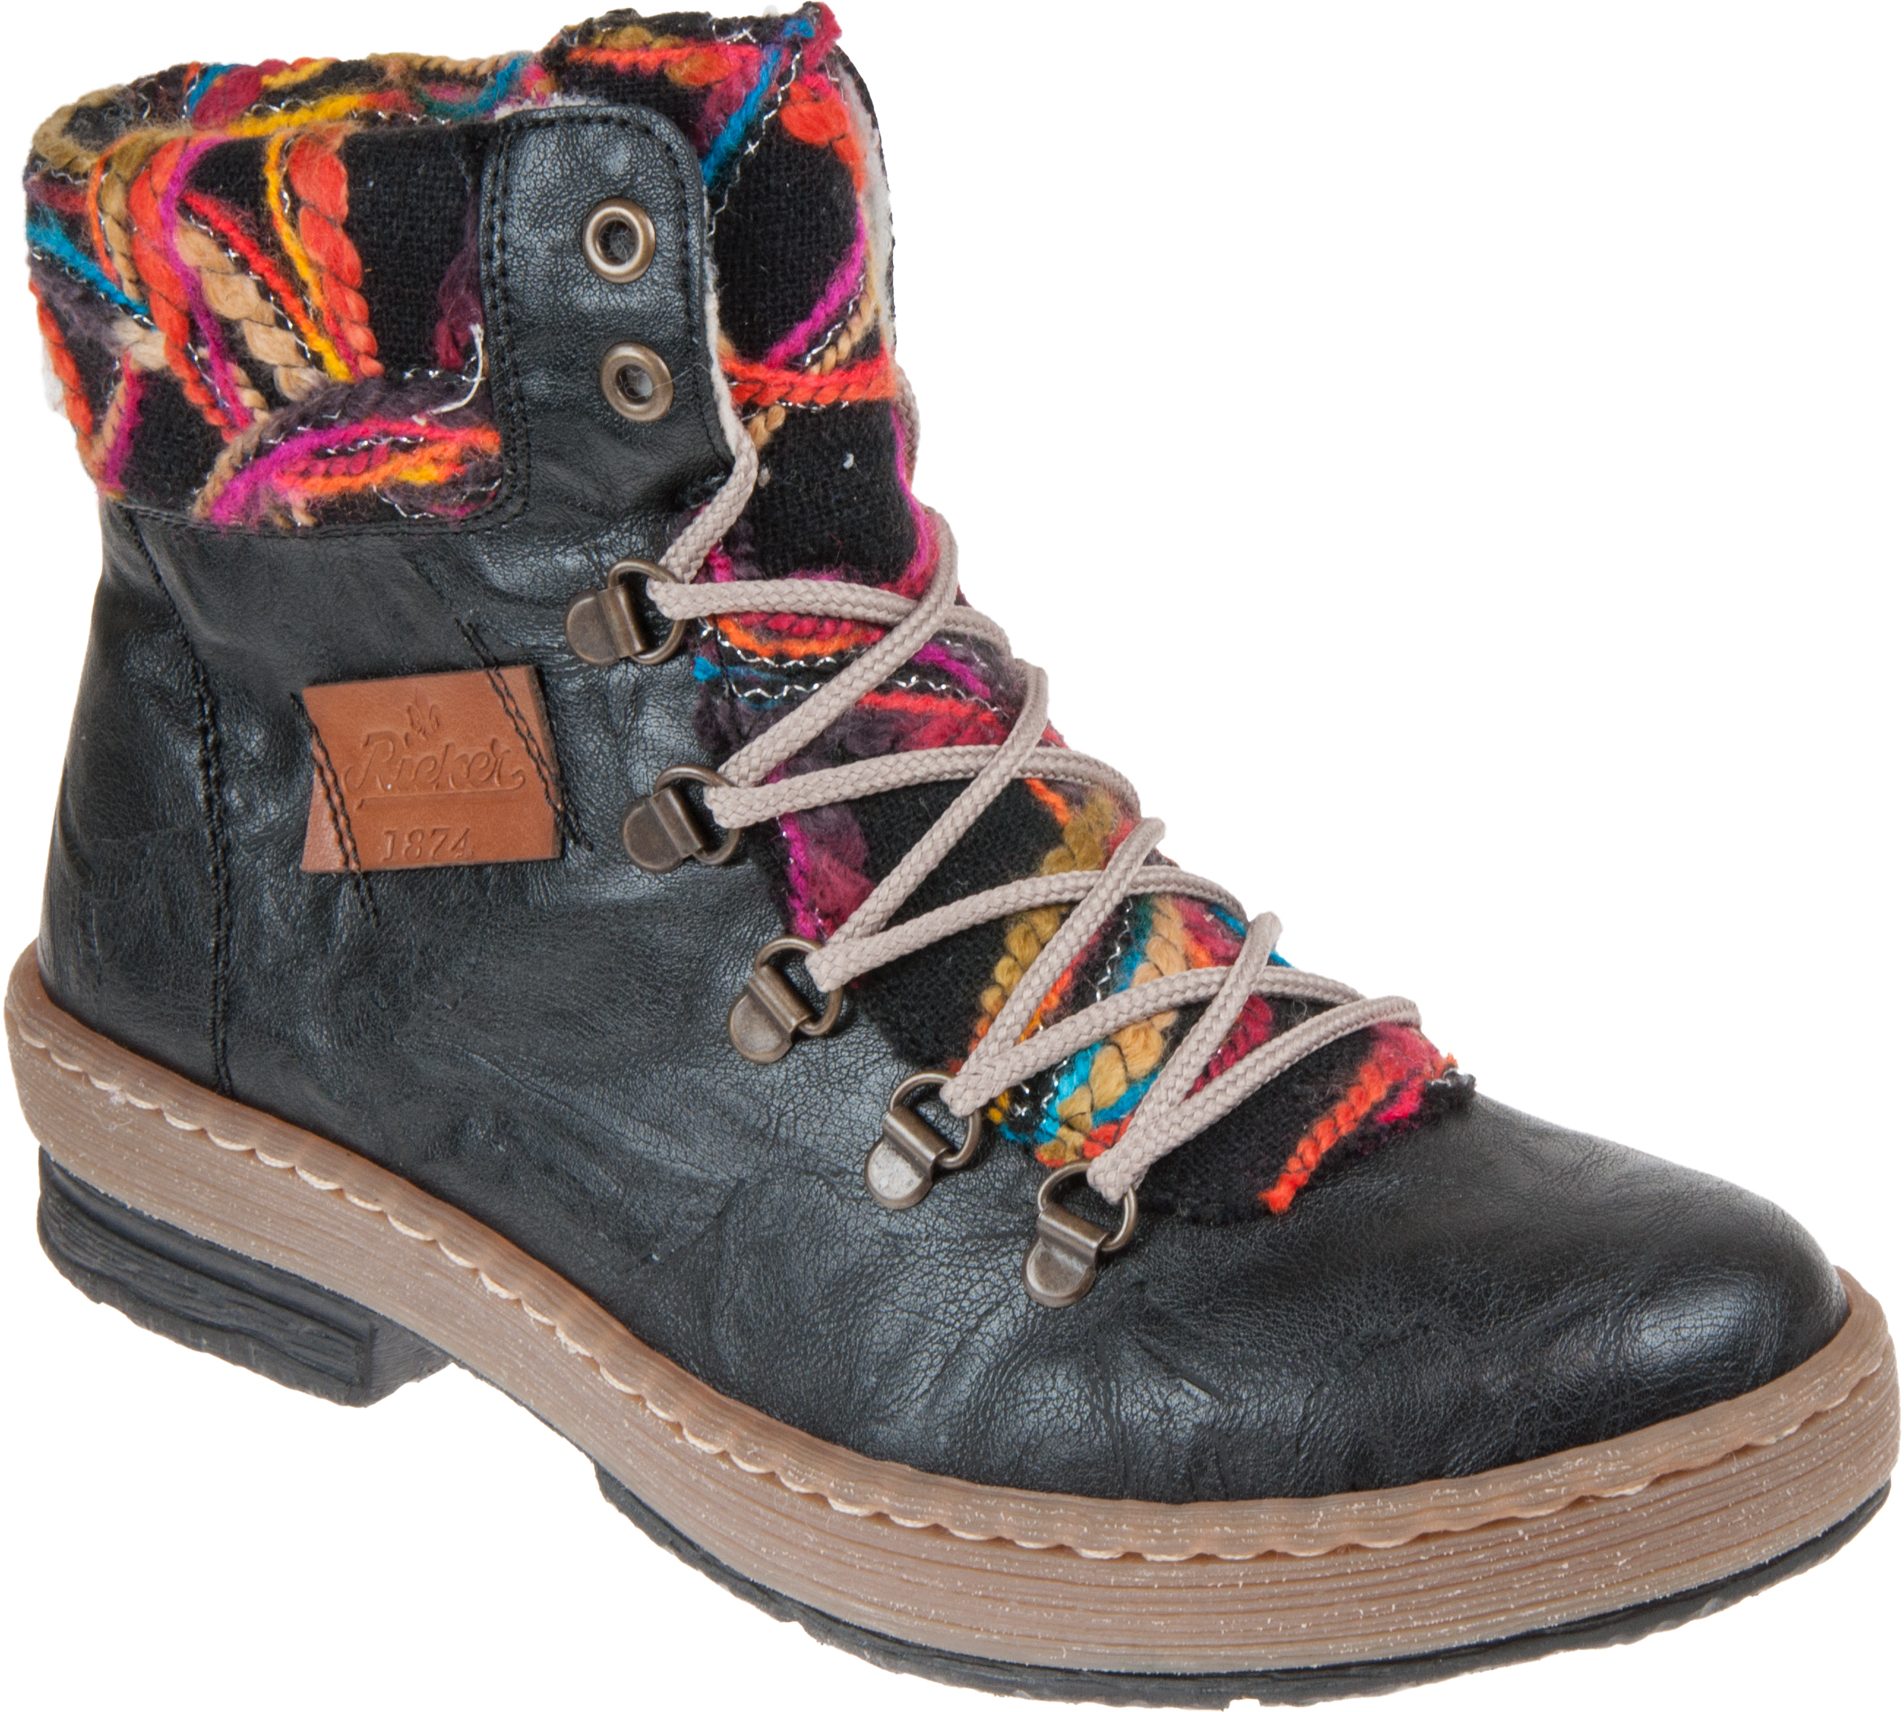 Rieker Felicitas Boot Black Multi Combi Z6743-00 - Ankle Boots ...